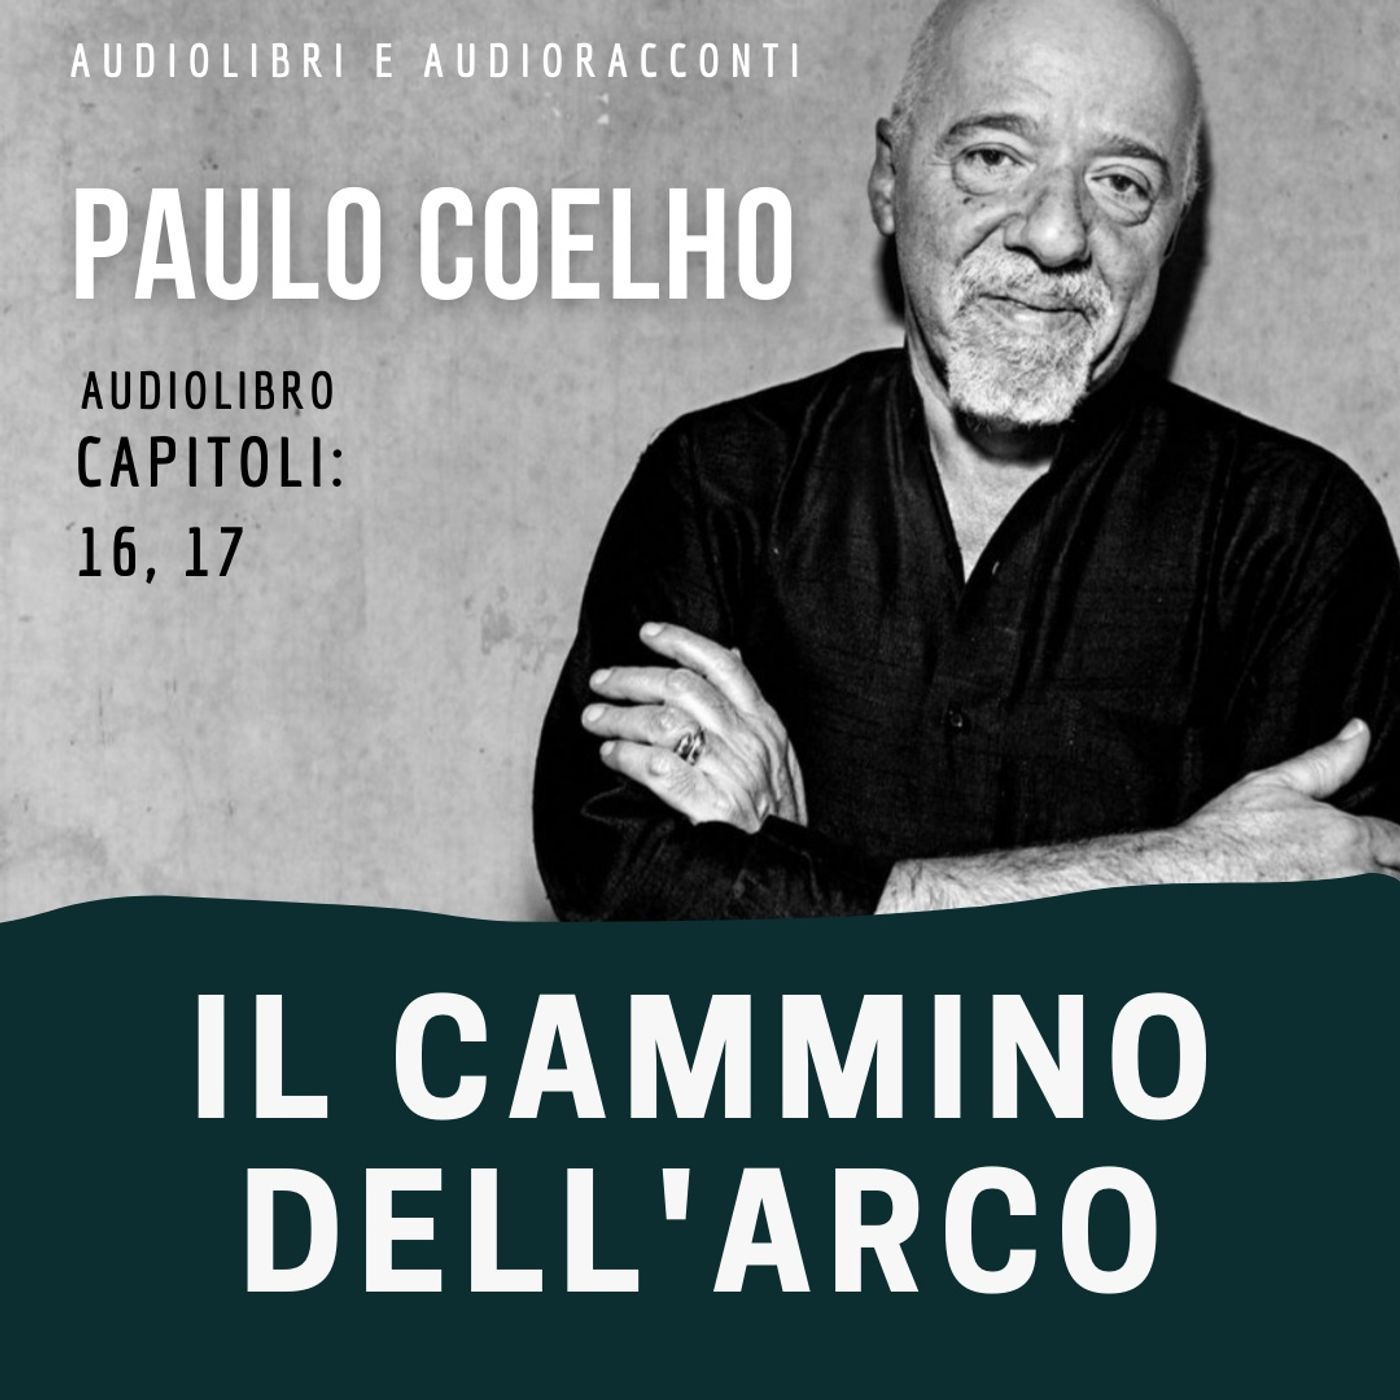 Il cammino dell'arco di Paulo Coelho [capitoli 16, 17] - Audiolibro